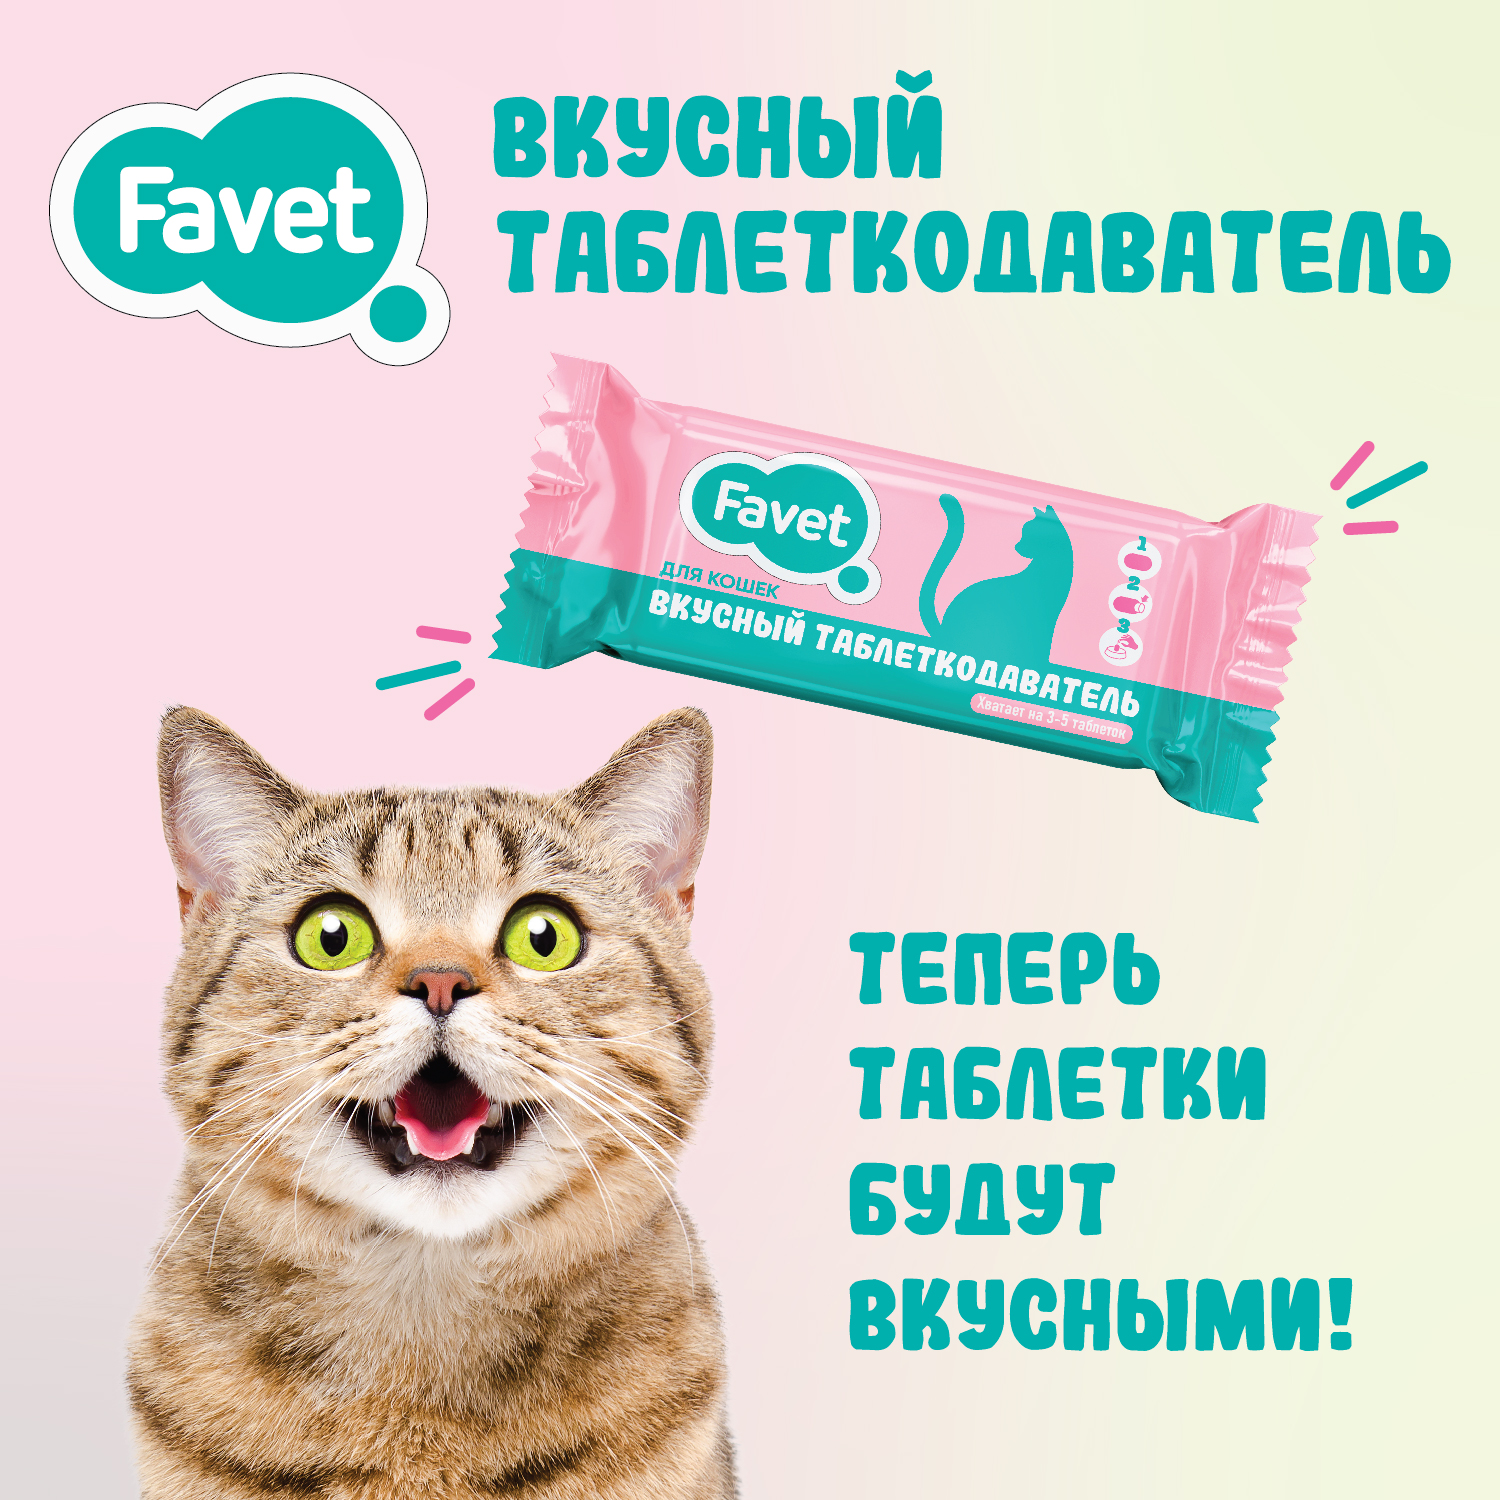 Favet Вкусный таблеткодаватель для кошек, 1 шт